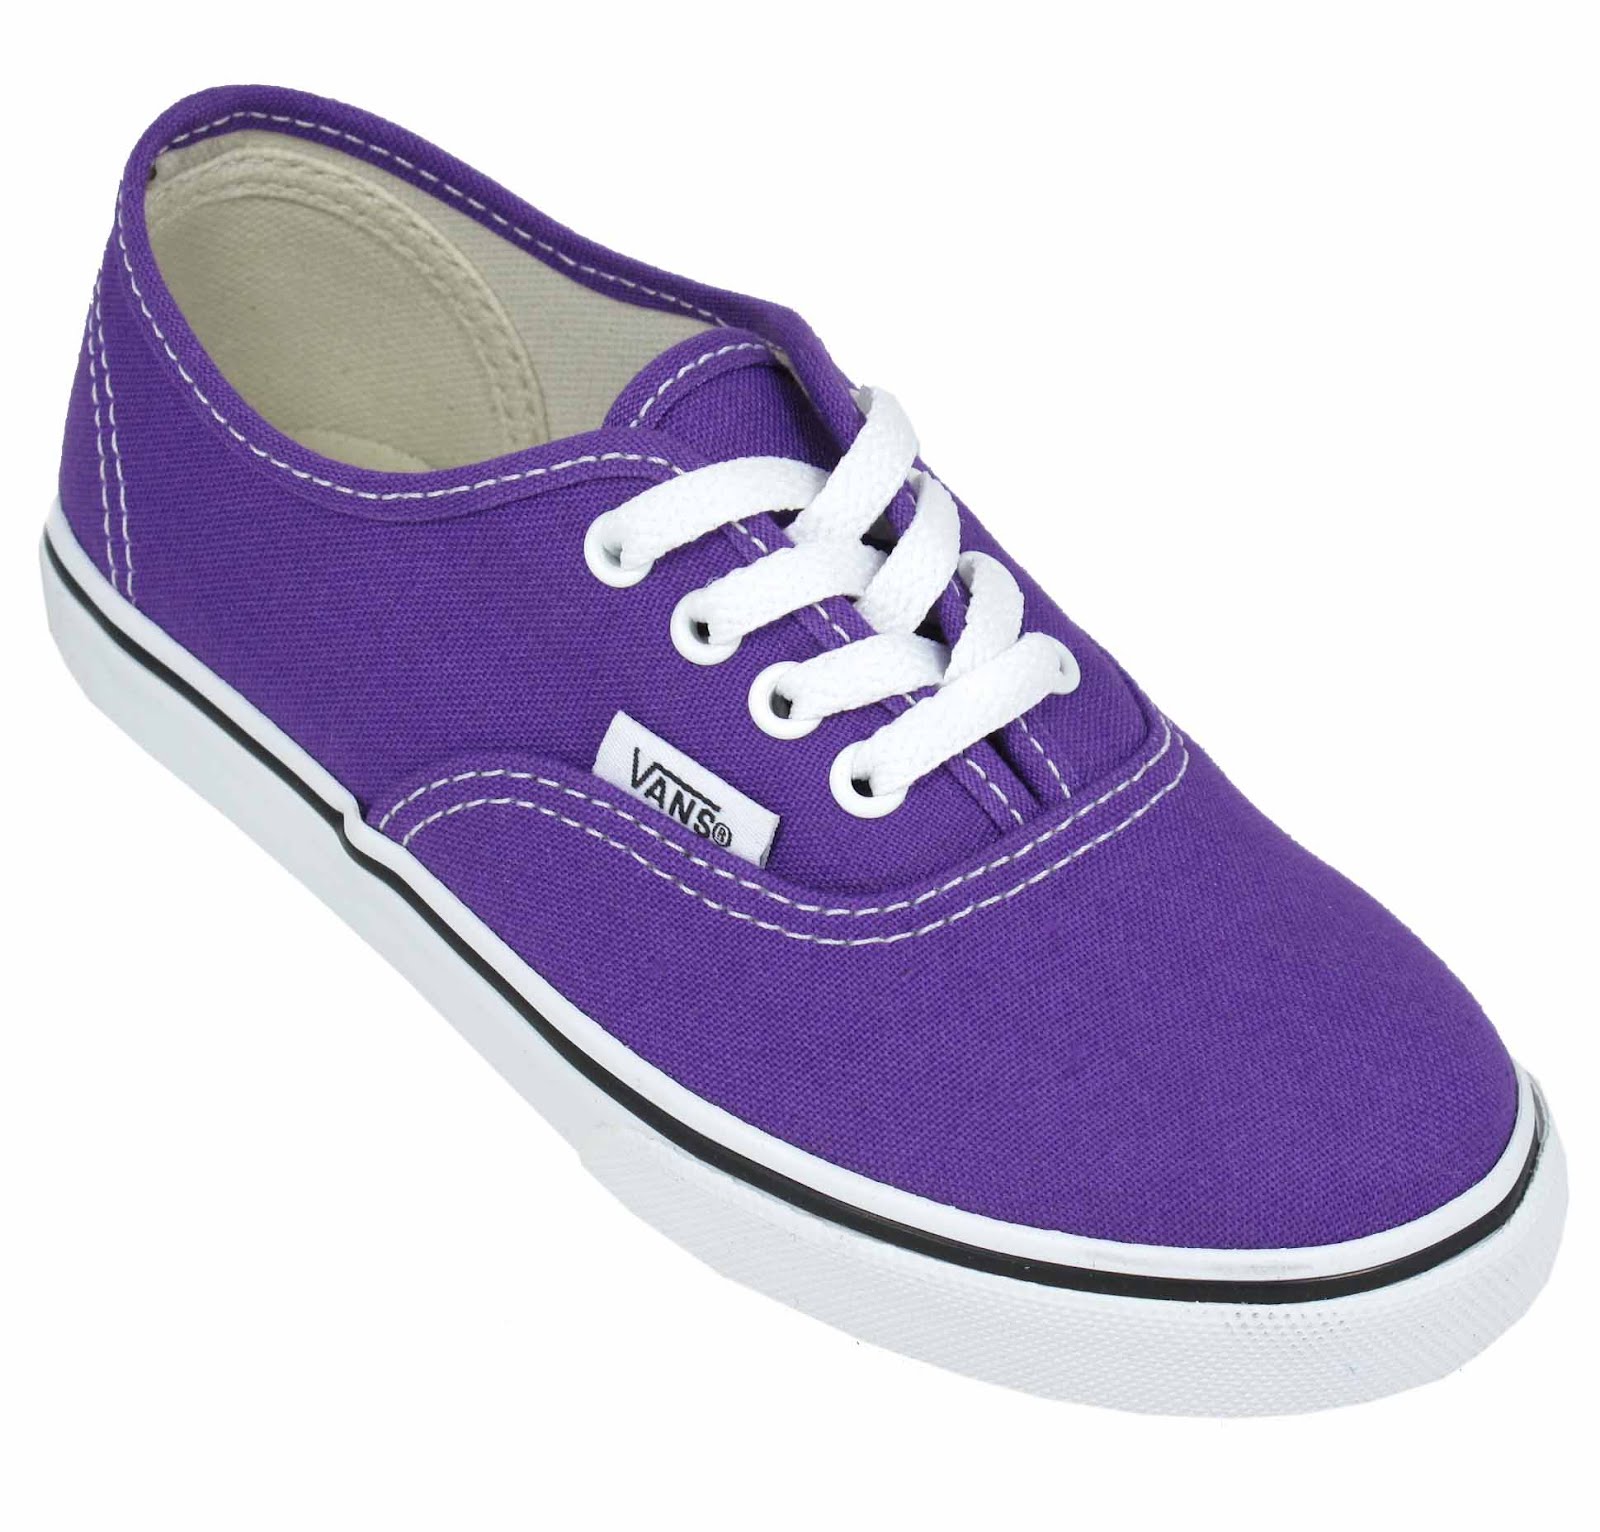 Landau Online Vans Kids Shoes New Colours!